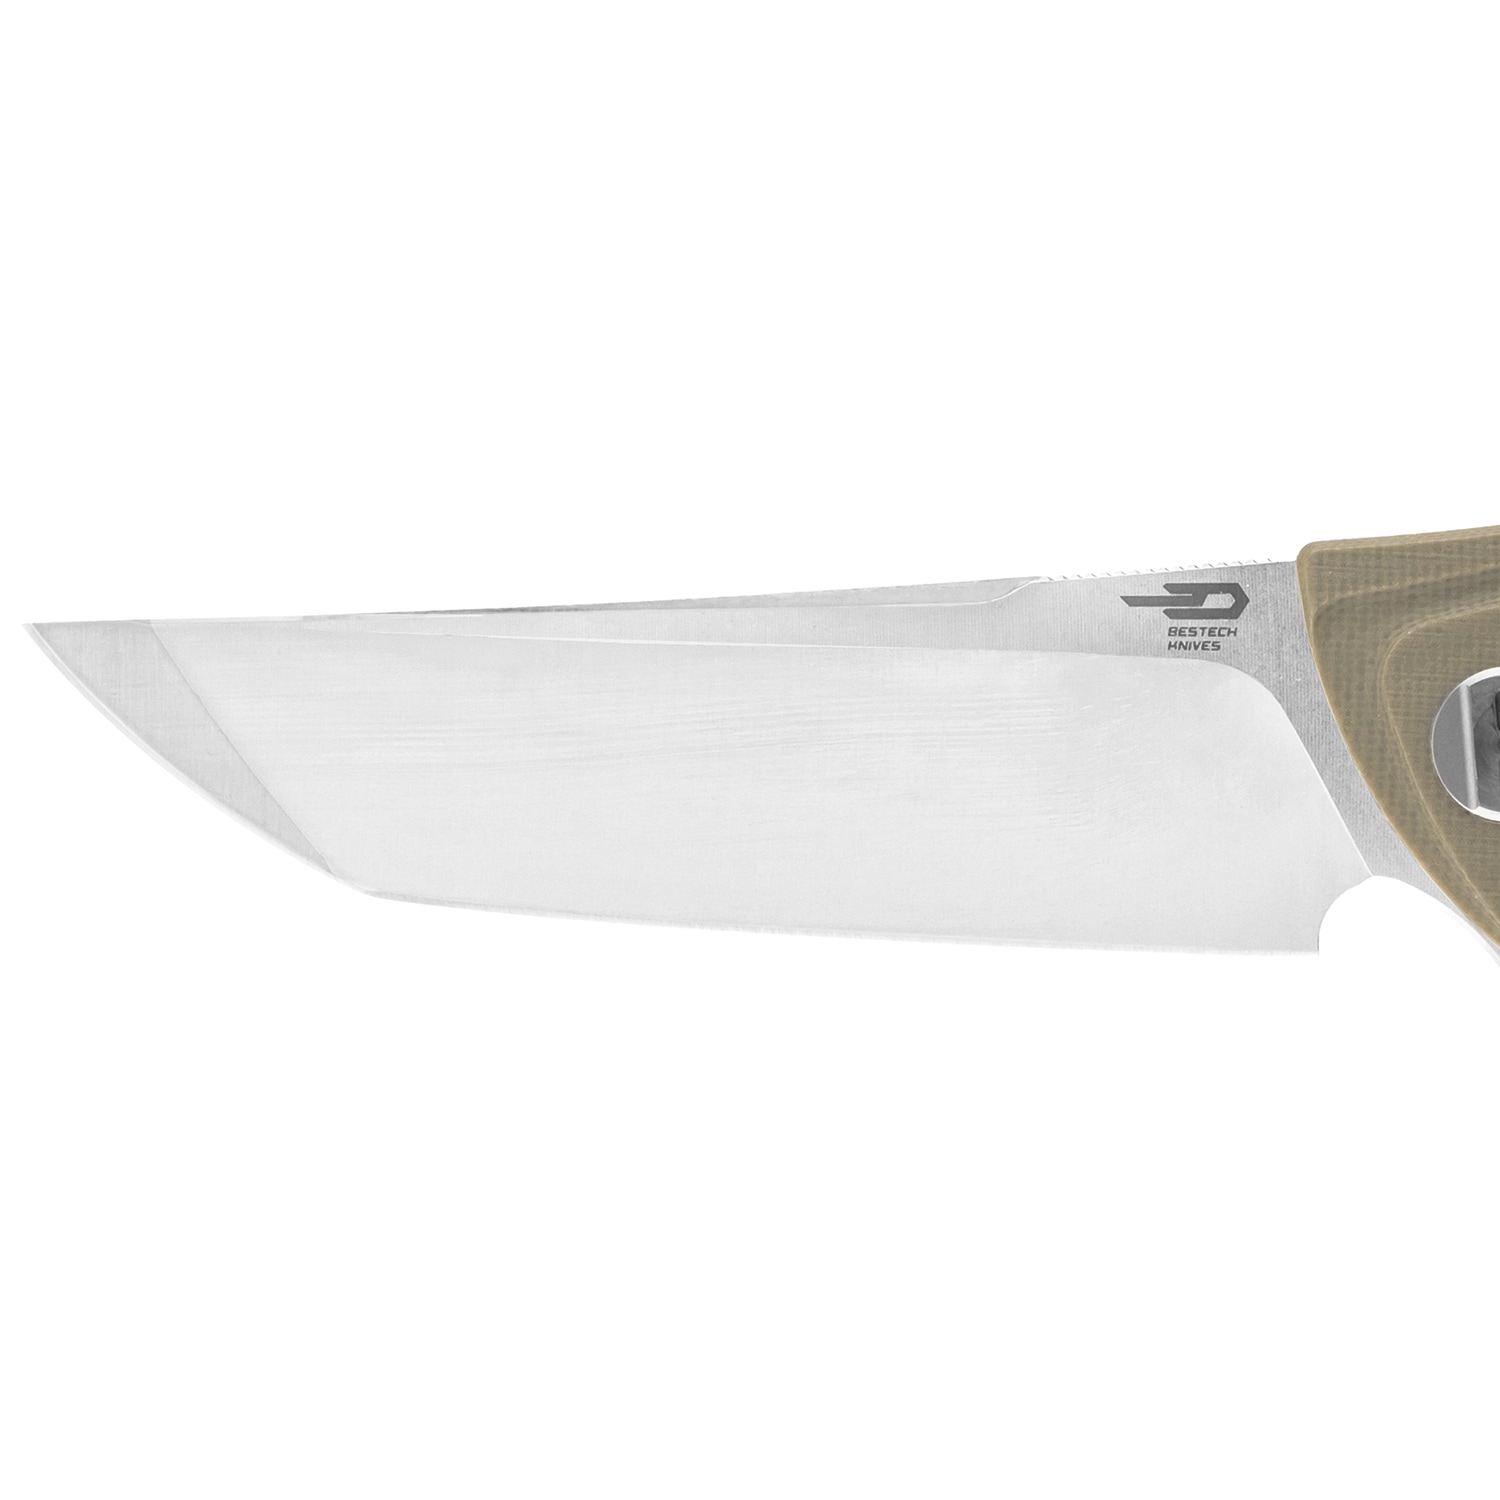 Nóż składany Bestech Knives Paladin - Beige 